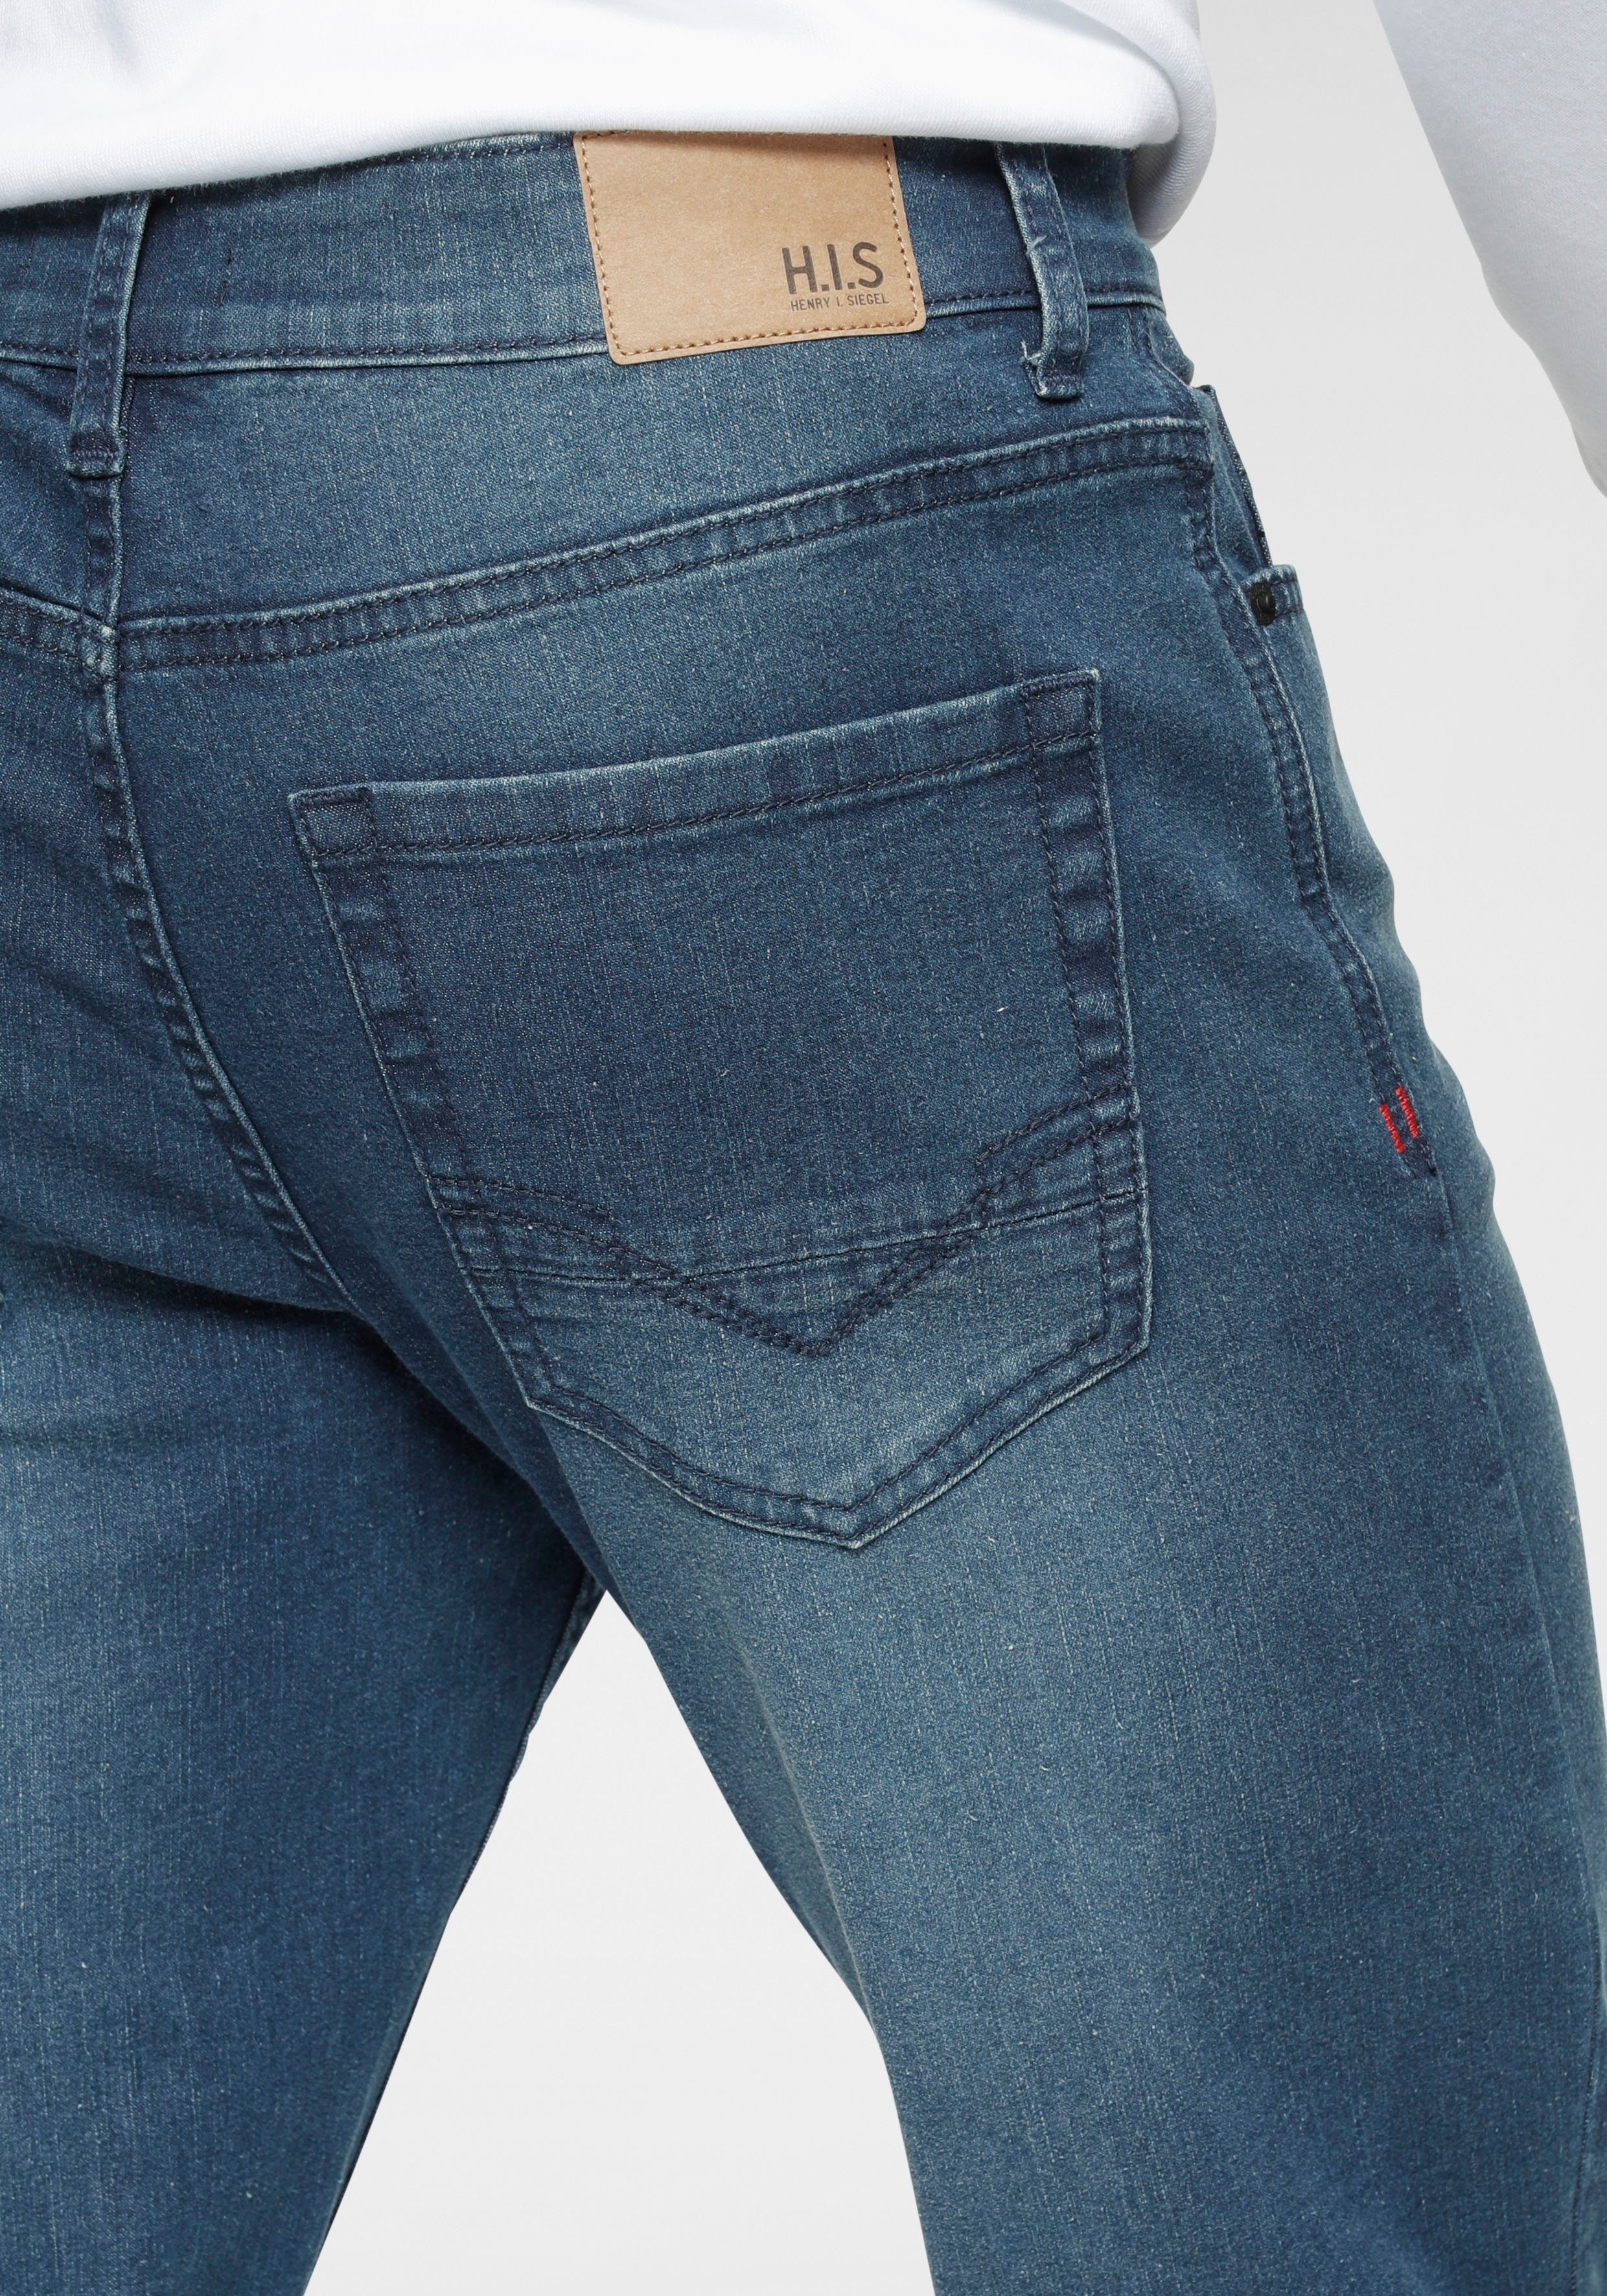 H.I.S Slim-fit-Jeans FLUSH durch darkblue-used Ozon wassersparende Ökologische, Produktion Wash